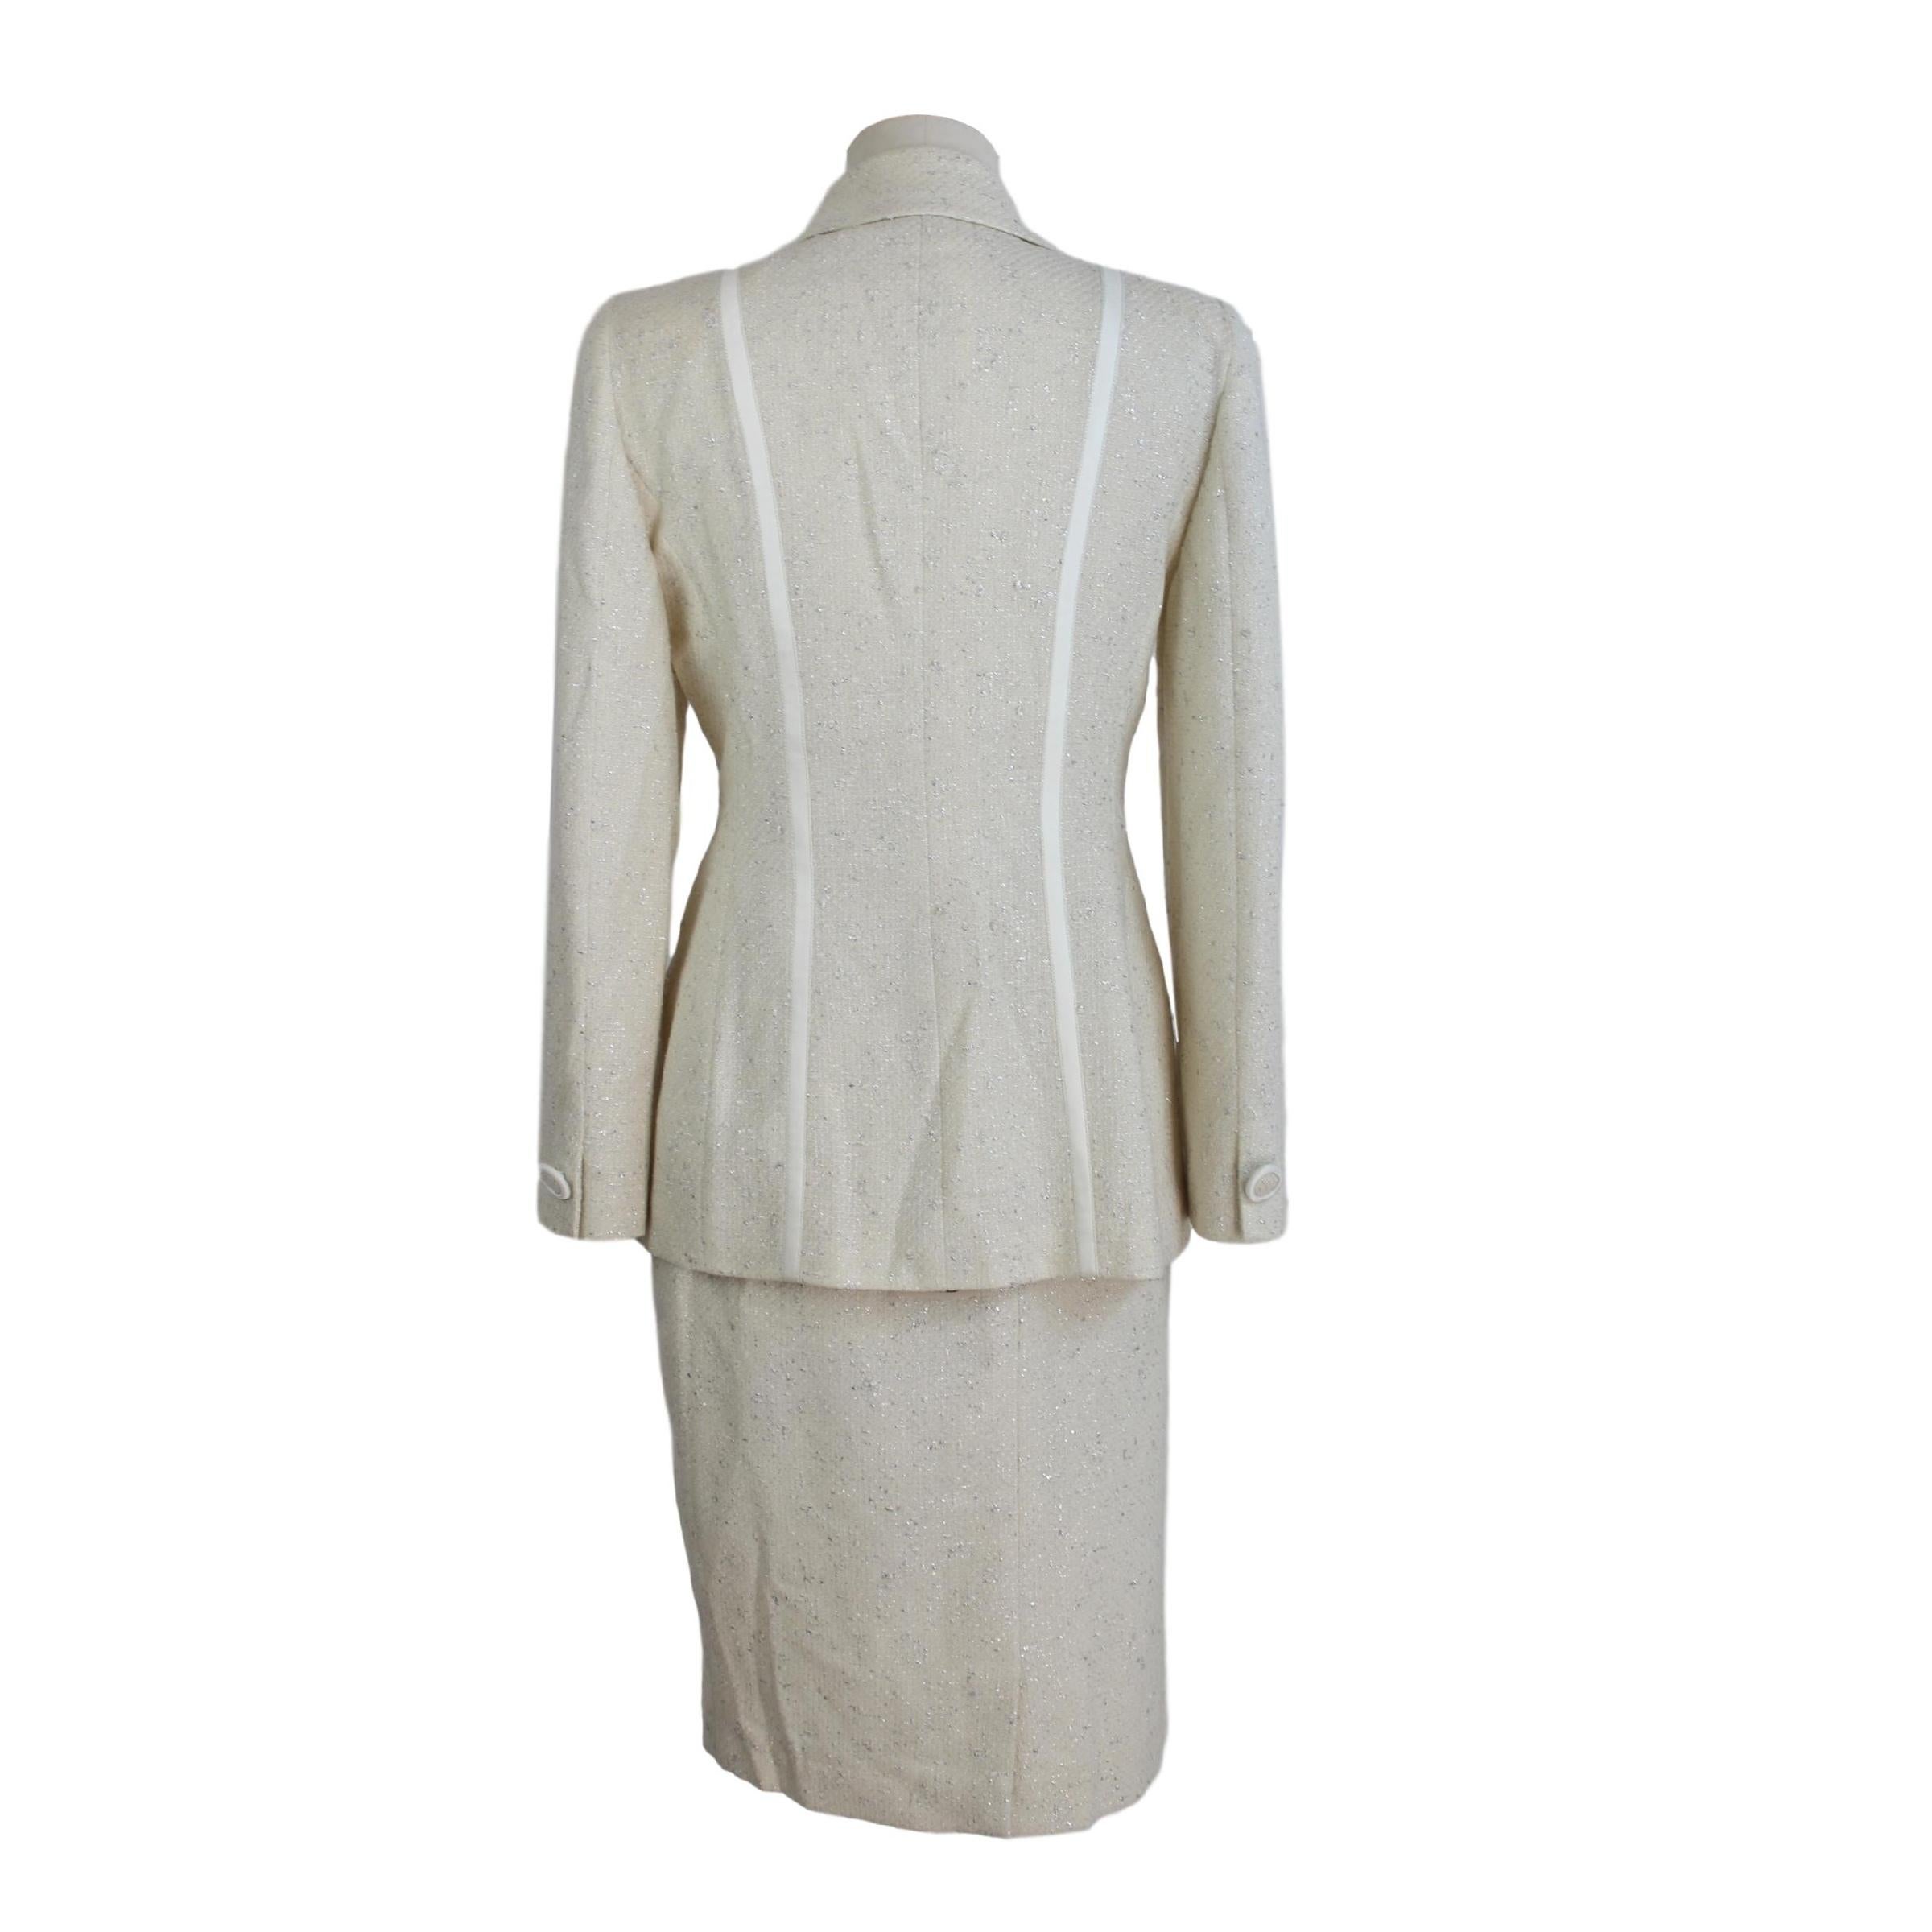 Annalisa Ferro eleganter Anzugrock für Damen. Anzug bestehend aus Jacke und Rock, 58% Wolle 25% Baumwolle 9% Polyamid 8% Polyester. Weiße Farbe mit silbernen Fäden. Die Jacke wird mit zwei Knöpfen geschlossen. Langer Rock auf Mantelknie. Hergestellt